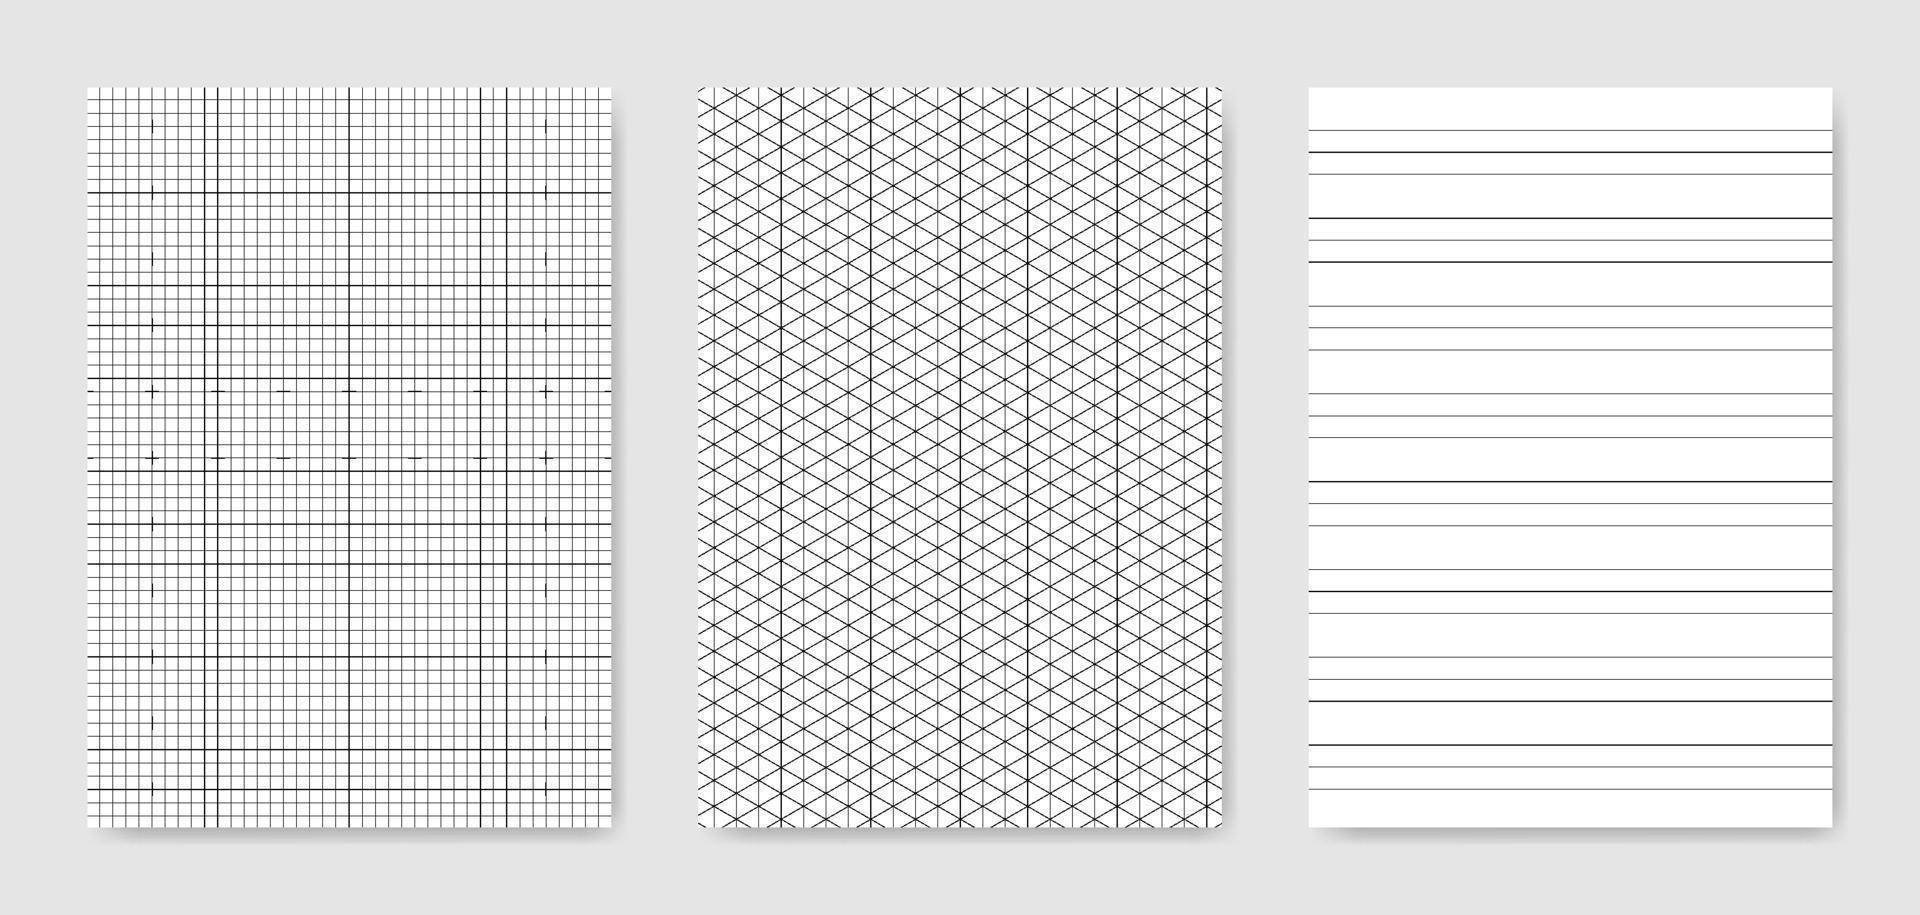 set di fogli di carta tecnica grafica in bianco per la rappresentazione dei dati vettore